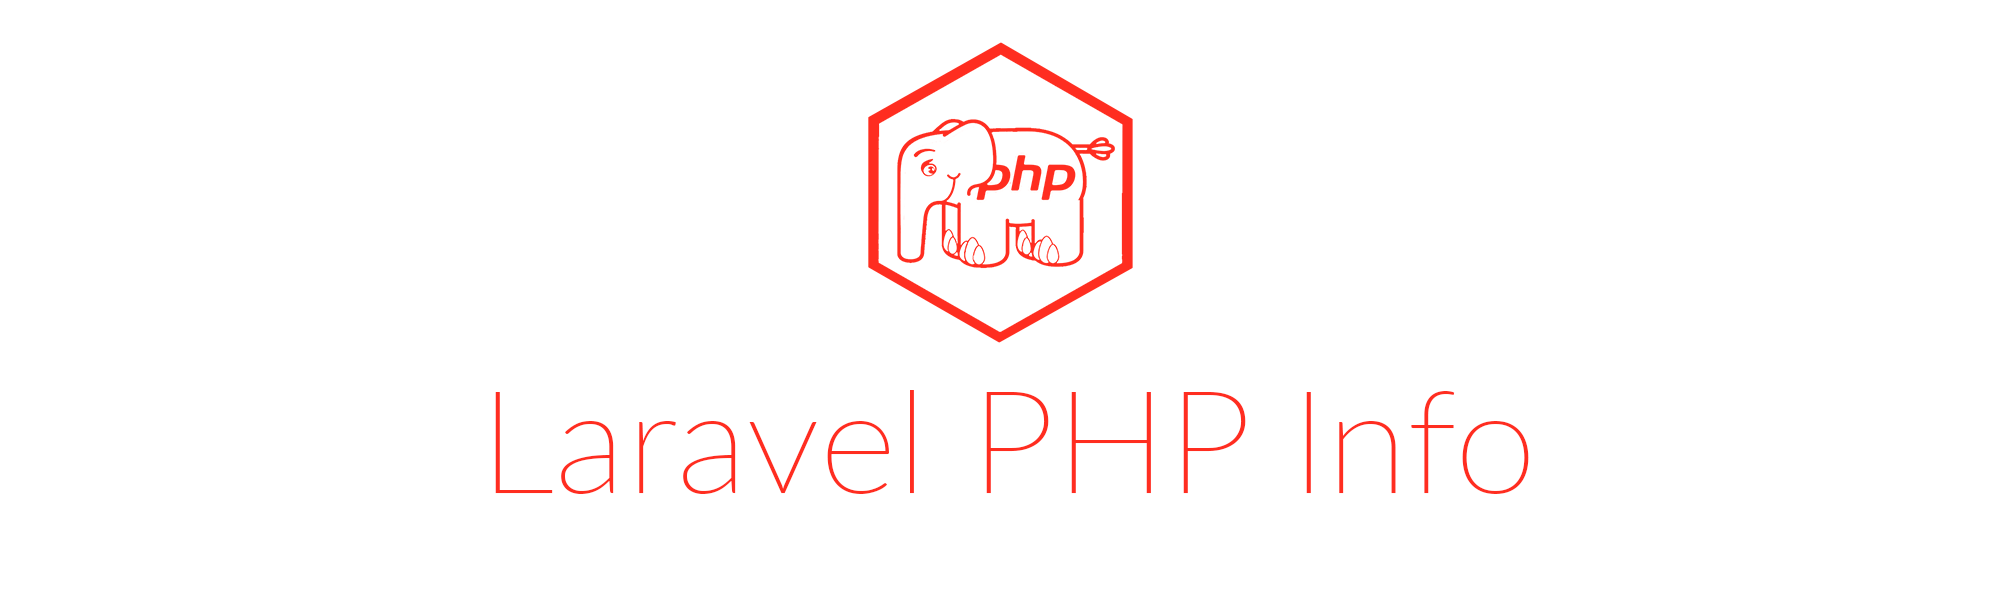 Laravel PHP Info